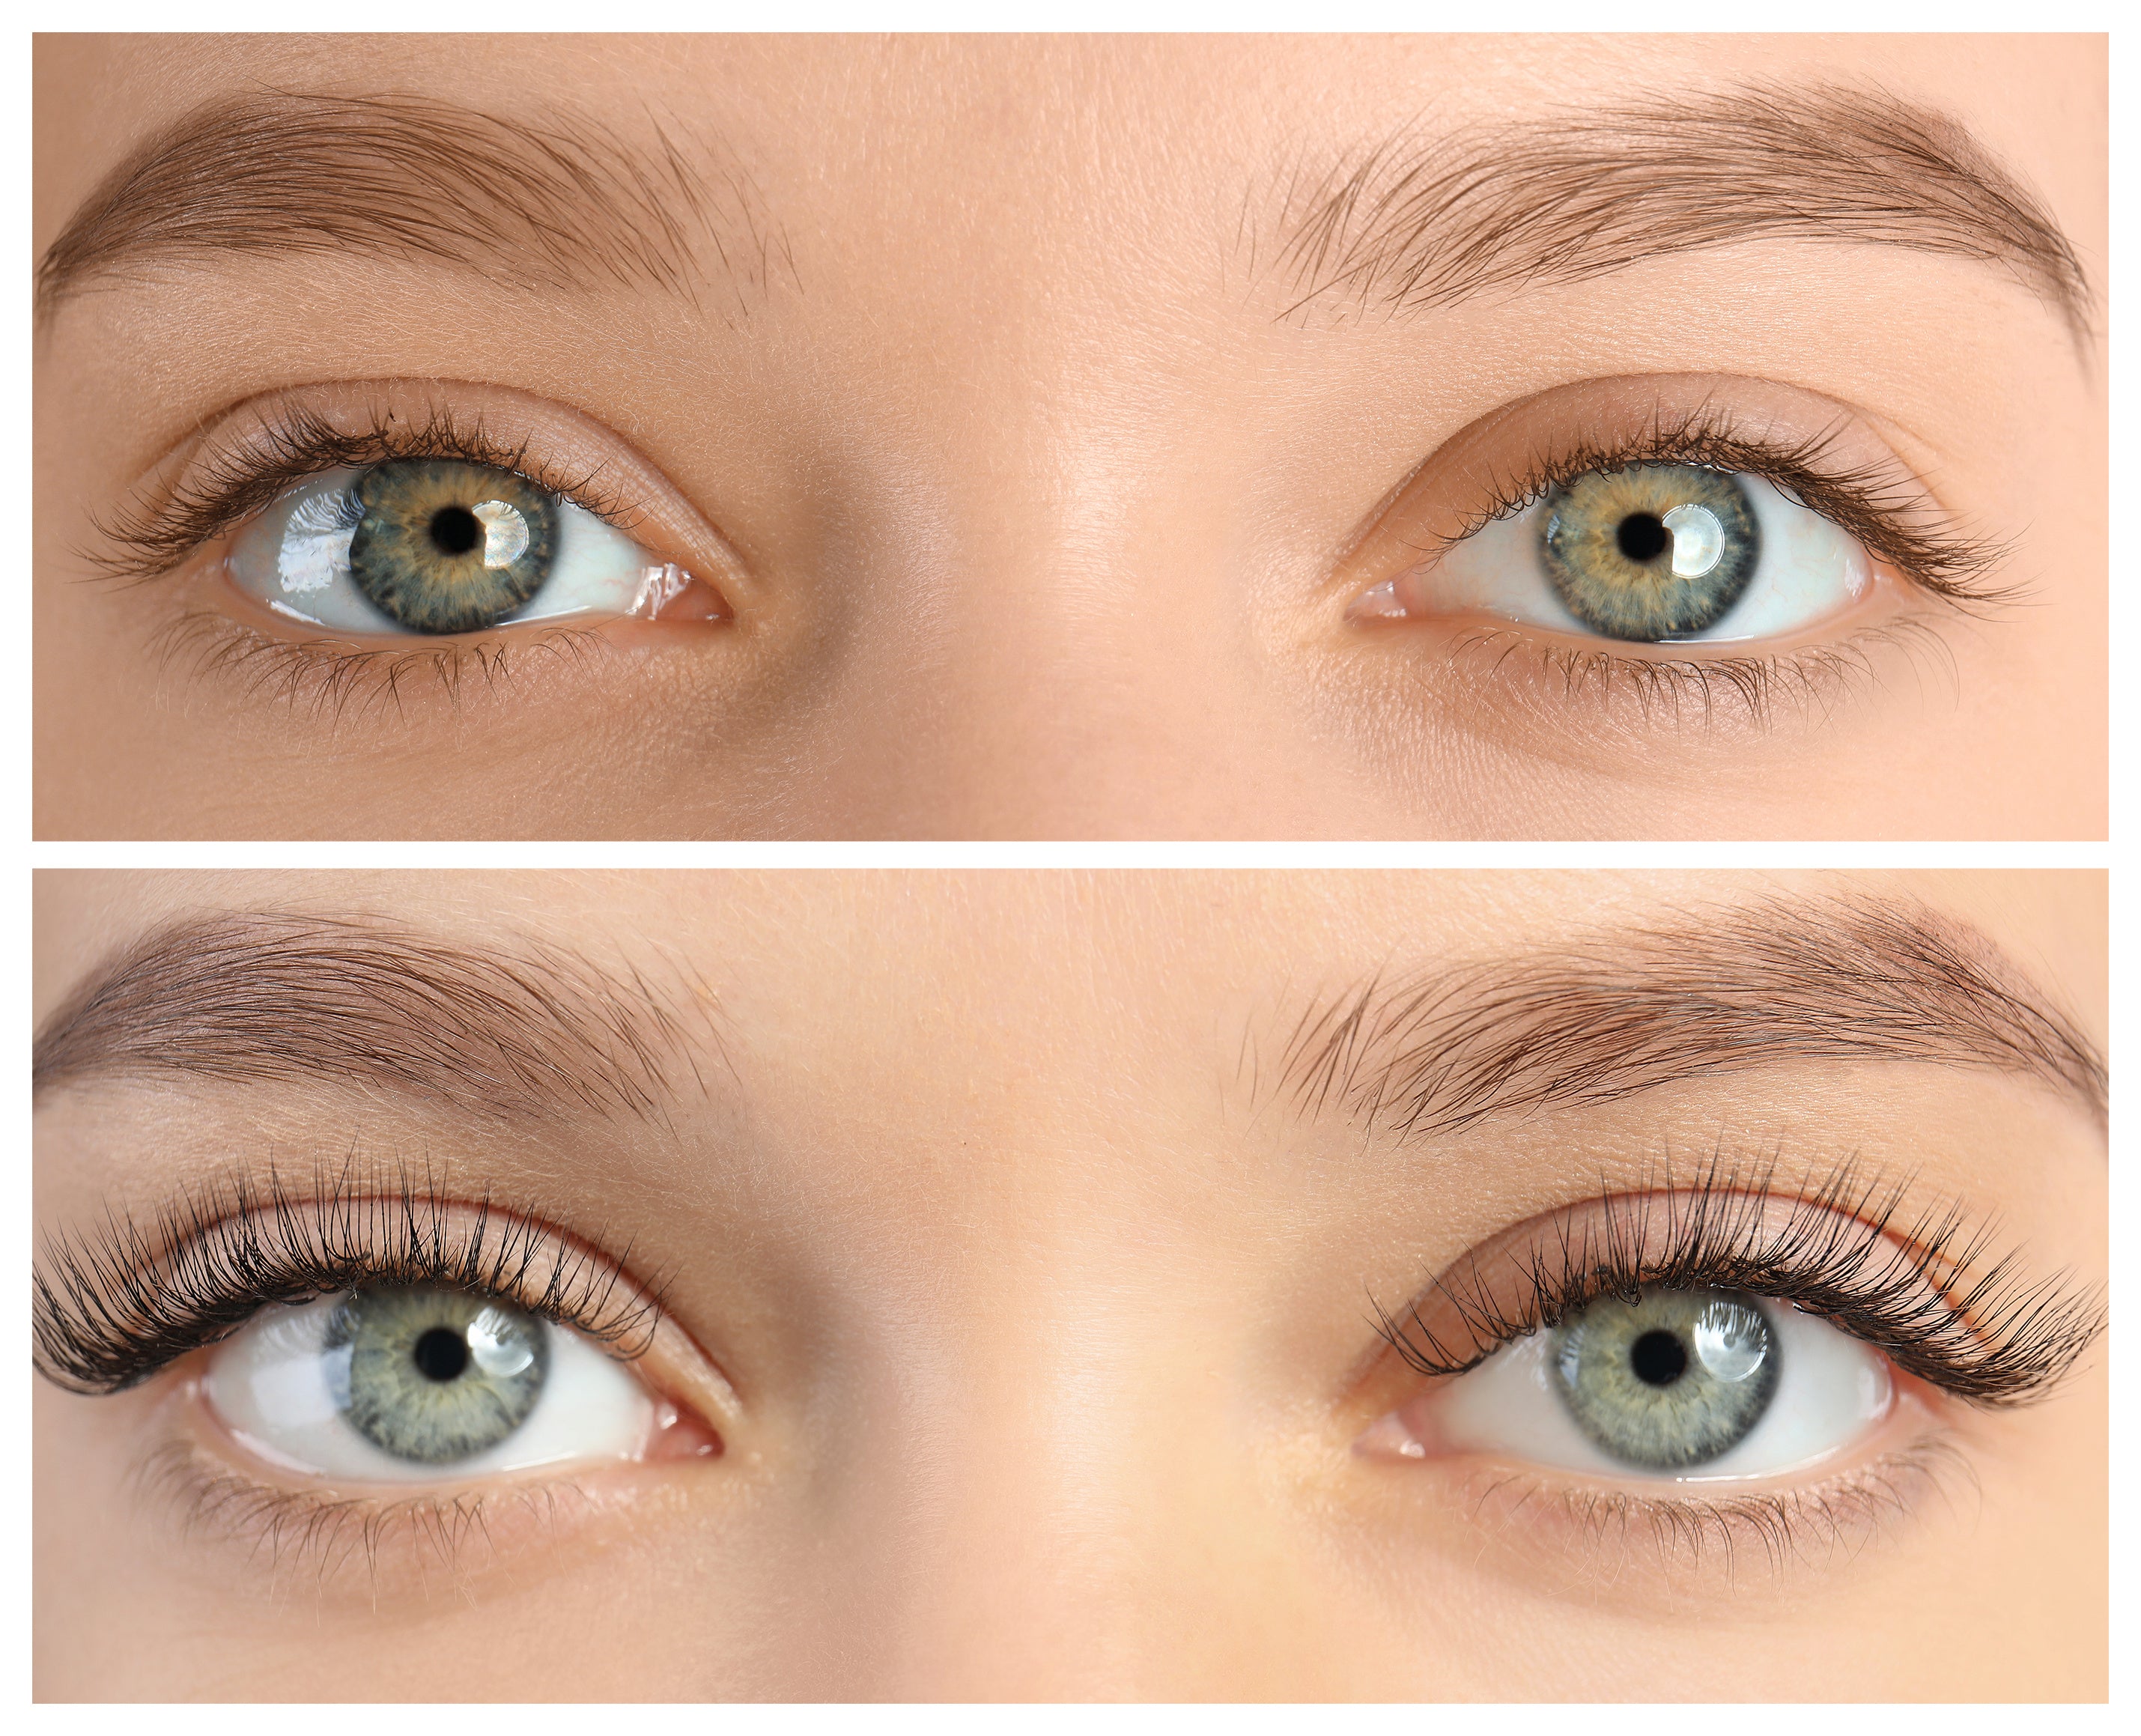 15 Ways To Make Eyelashes Longer